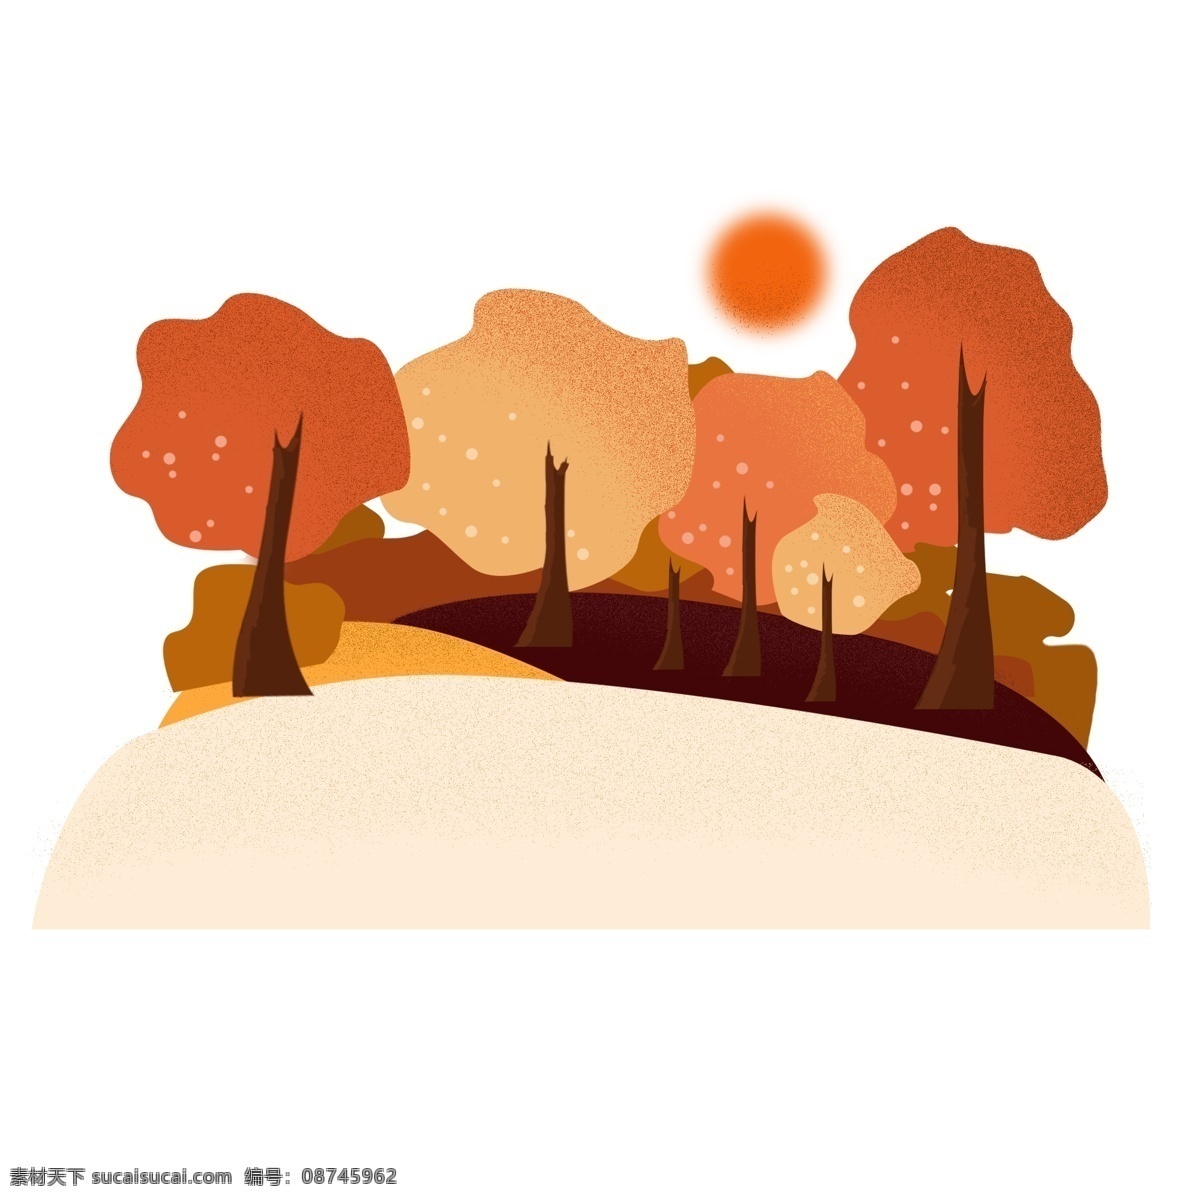 枫 树林 橘 色 手绘 植物 元素 原创 商用 枫树林 橘色 太阳 山坡